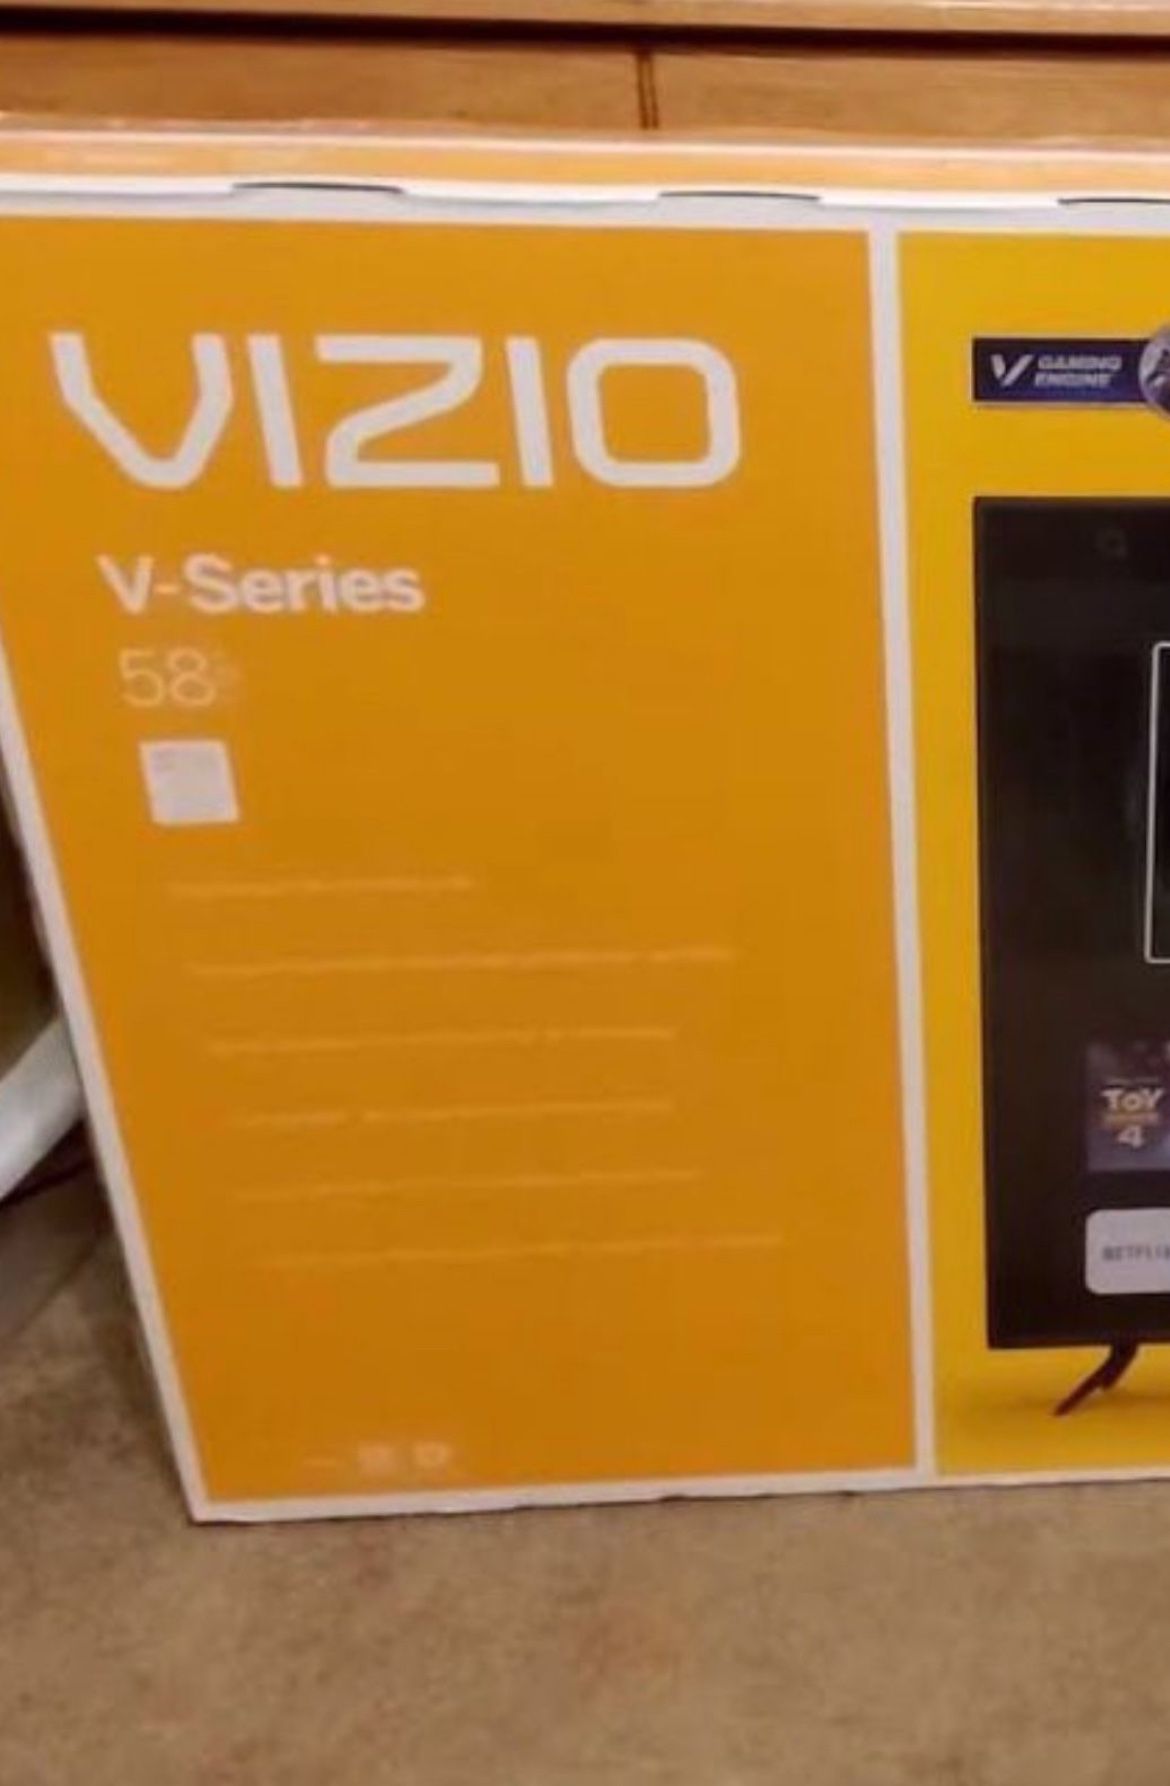 VIZIO 58” 4K ULTRA HD SMART LOADED !!